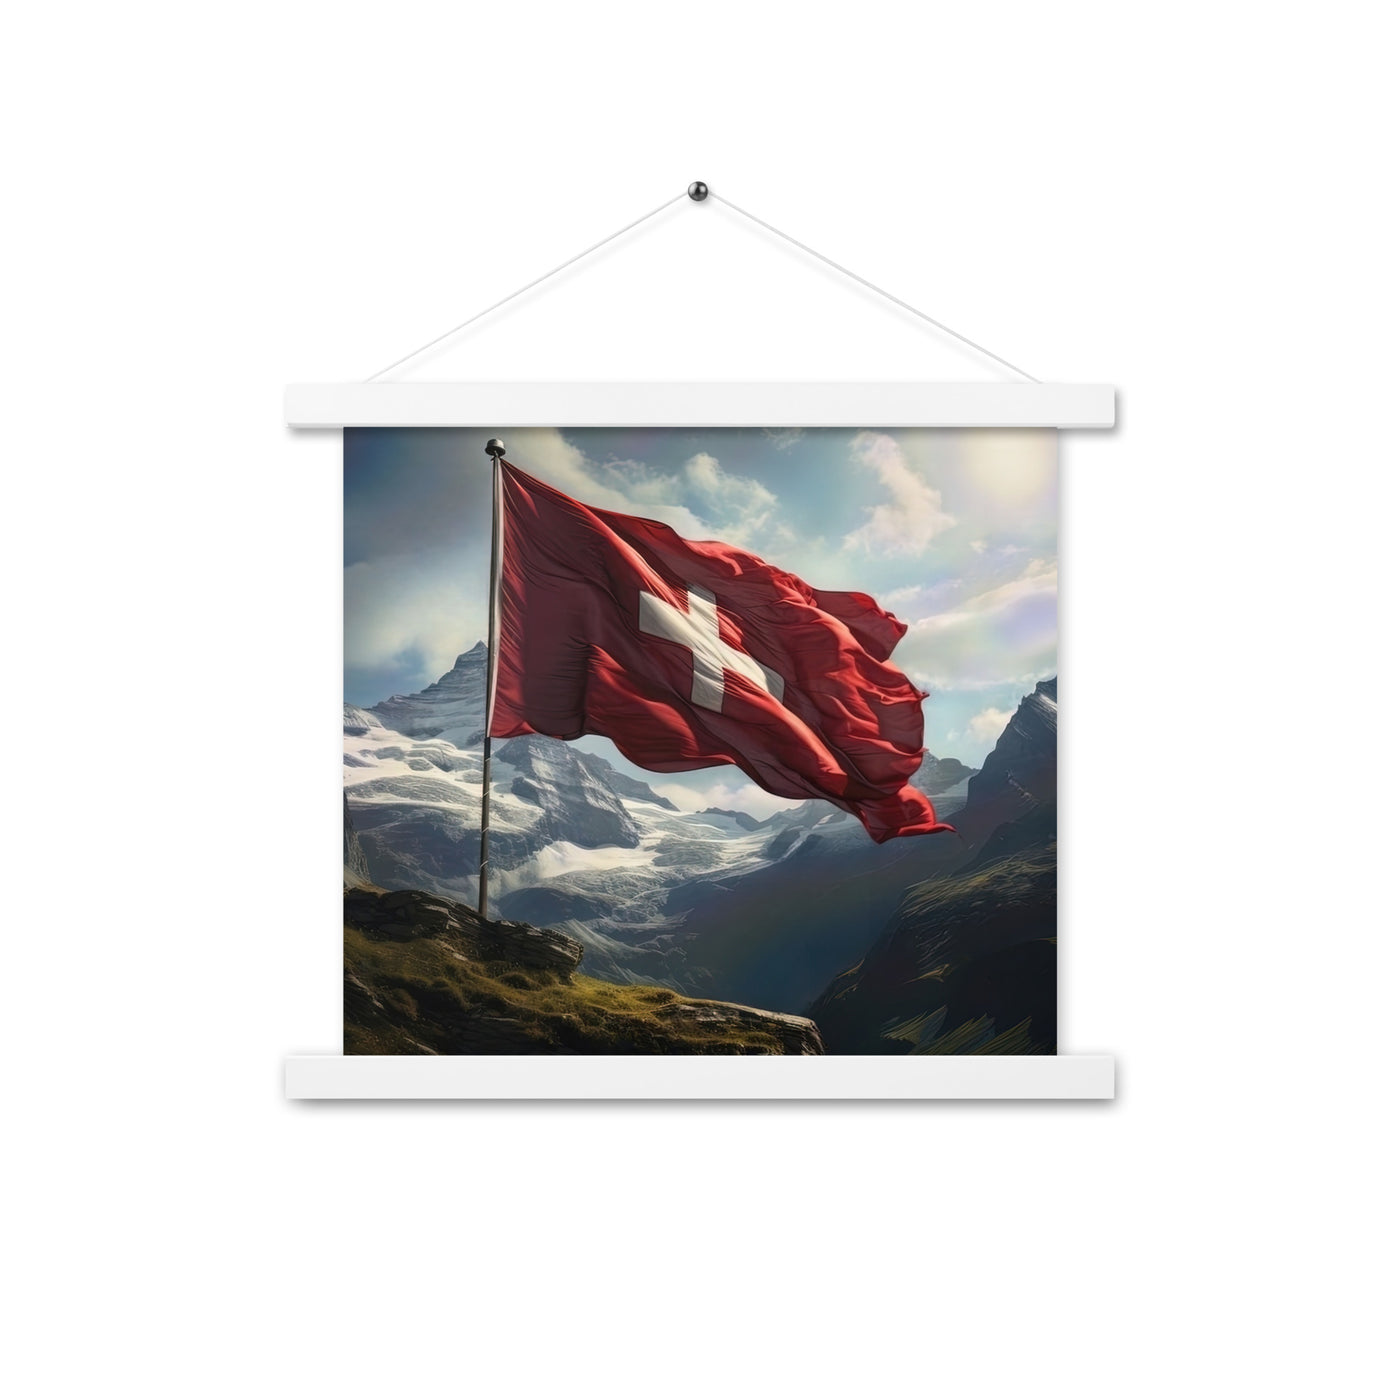 Schweizer Flagge und Berge im Hintergrund - Fotorealistische Malerei - Premium Poster mit Aufhängung berge xxx 35.6 x 35.6 cm